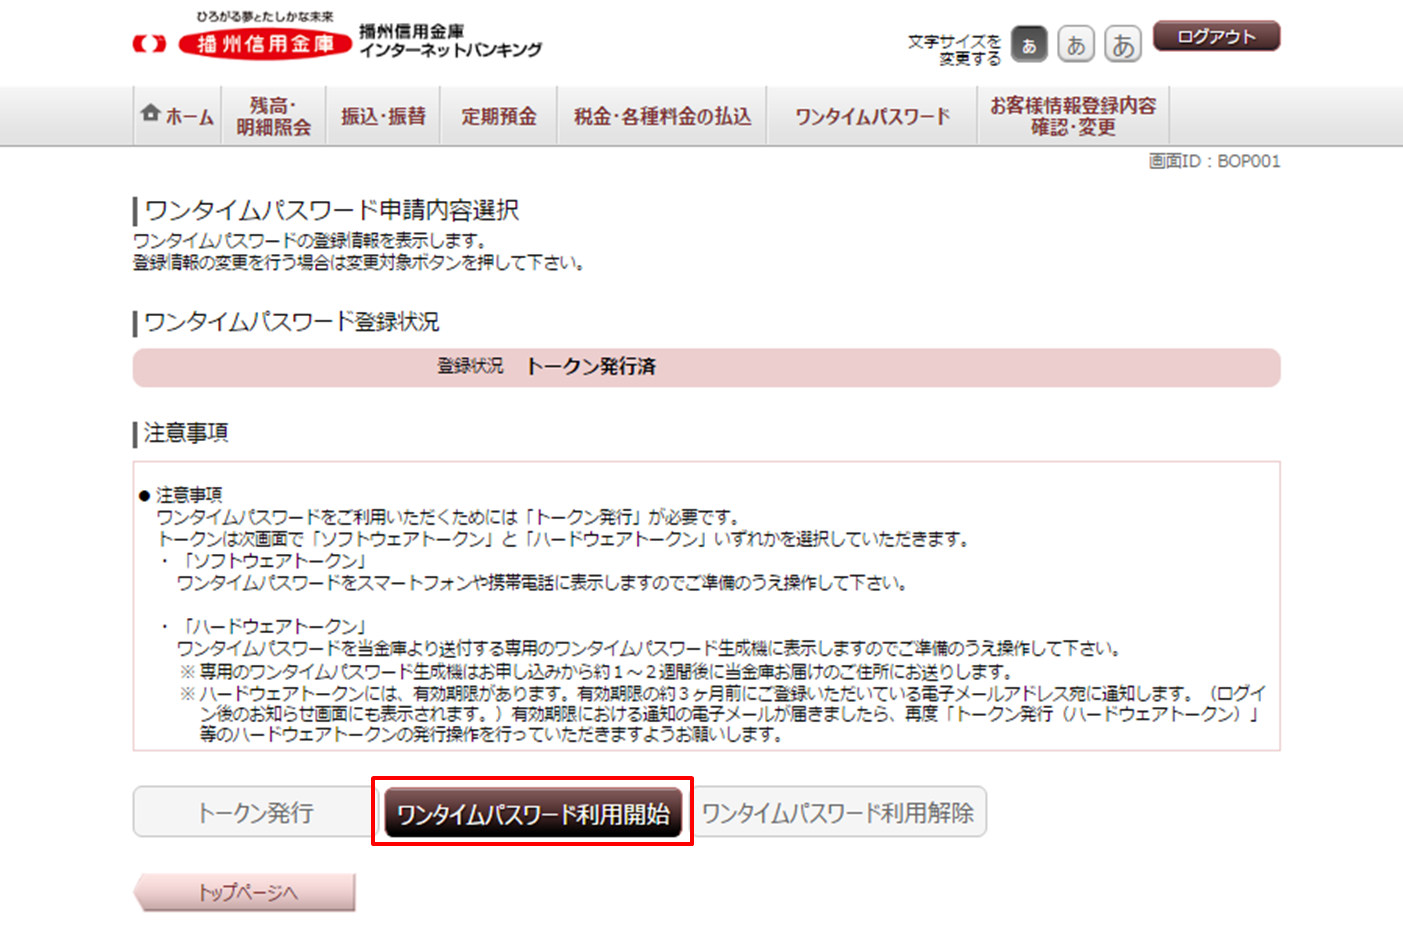 インターネットバンキング ワンタイムパスワード申請確認画面のイメージ